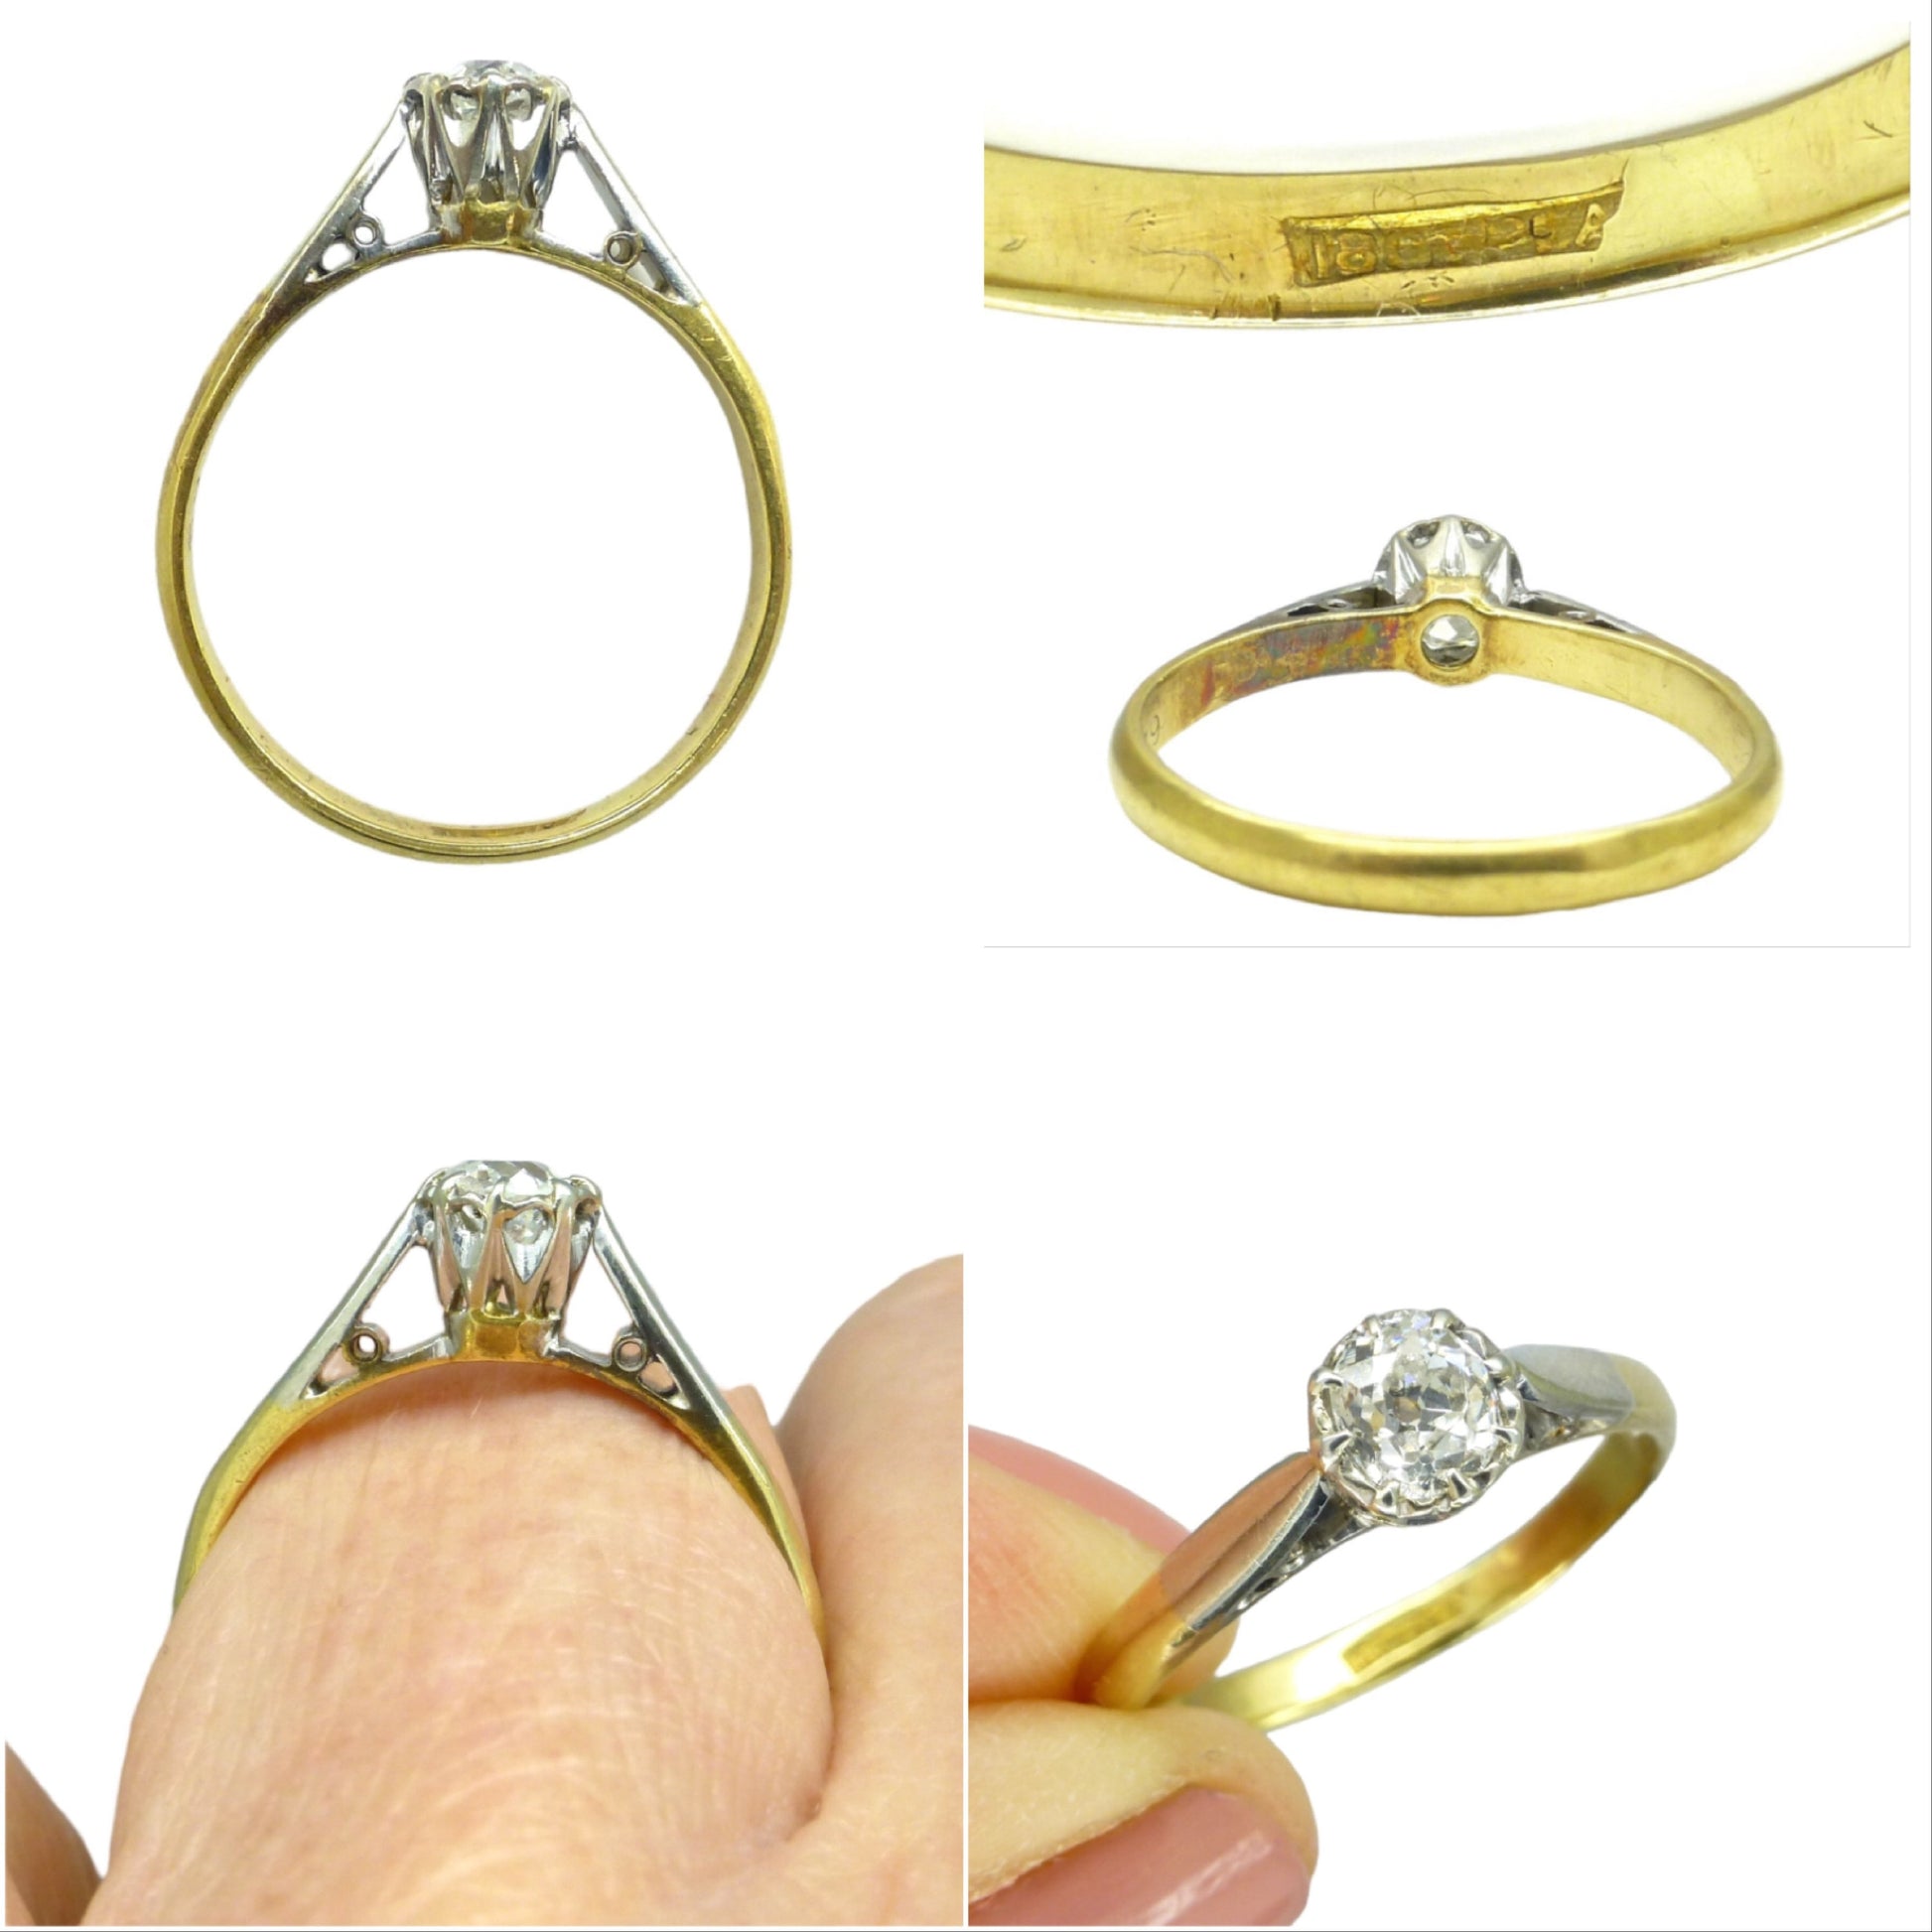 Antique Platinum 18ct old mine cut diamond solitaire engagement ring 0.25ct 1920's